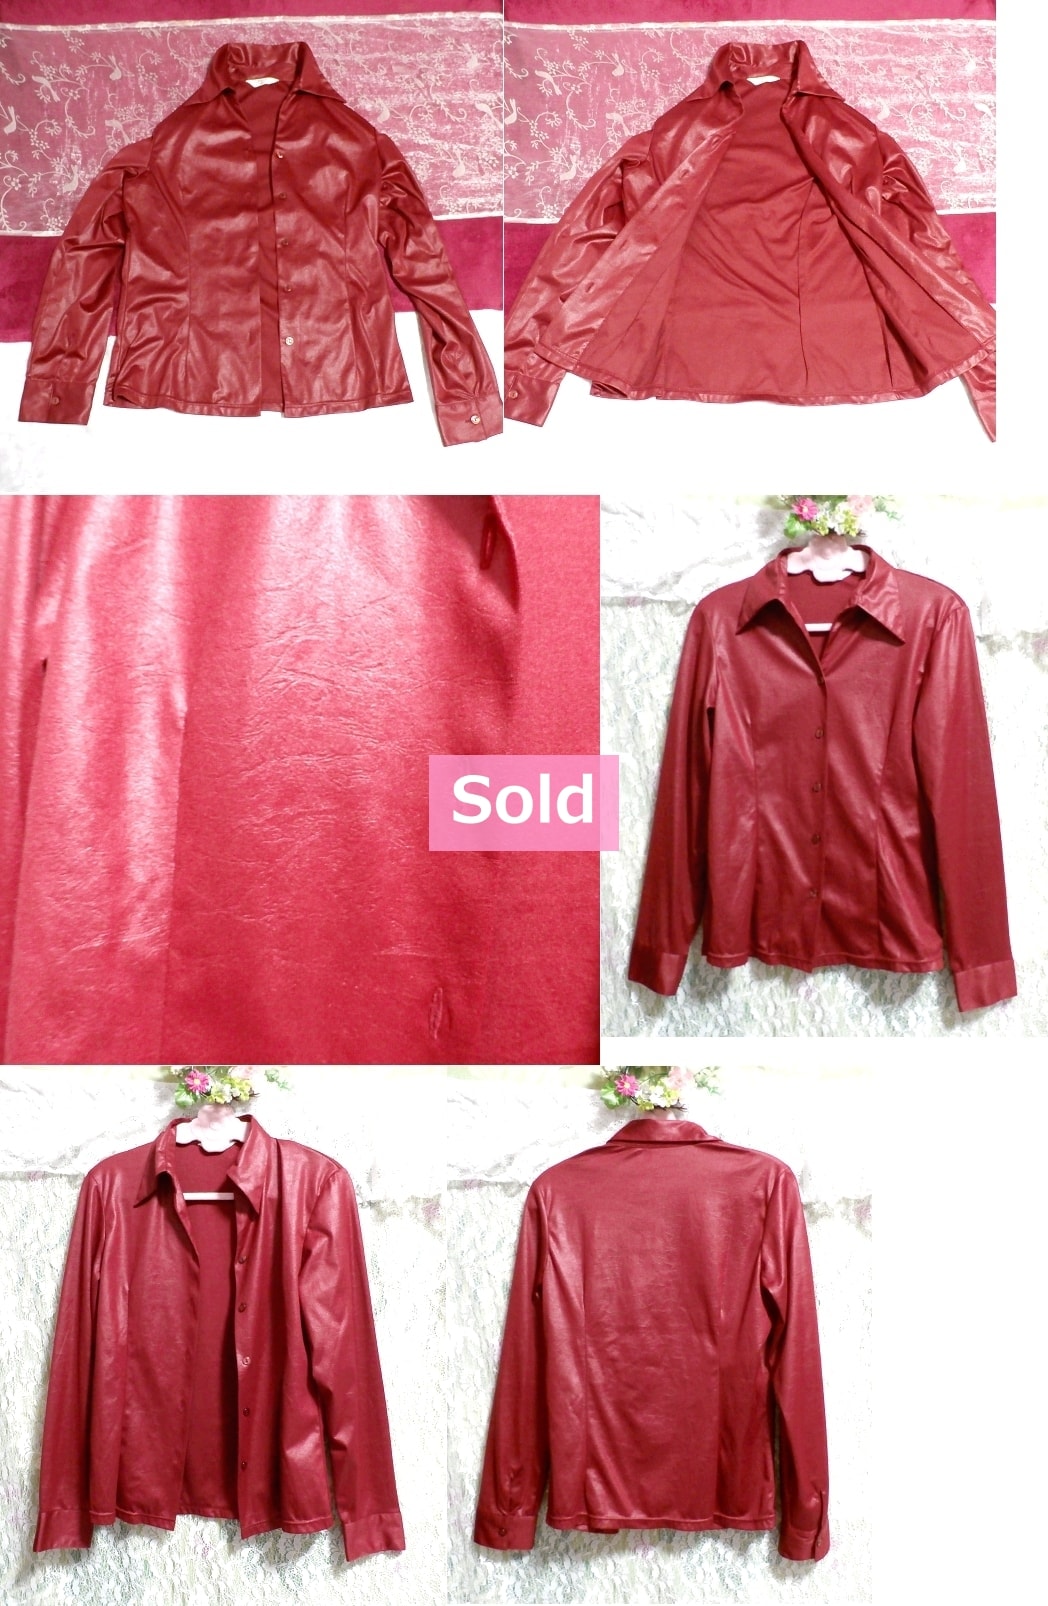 革風赤ワインレッド光沢羽織カーディガンブラウス Wine red gloss cardigan blouse